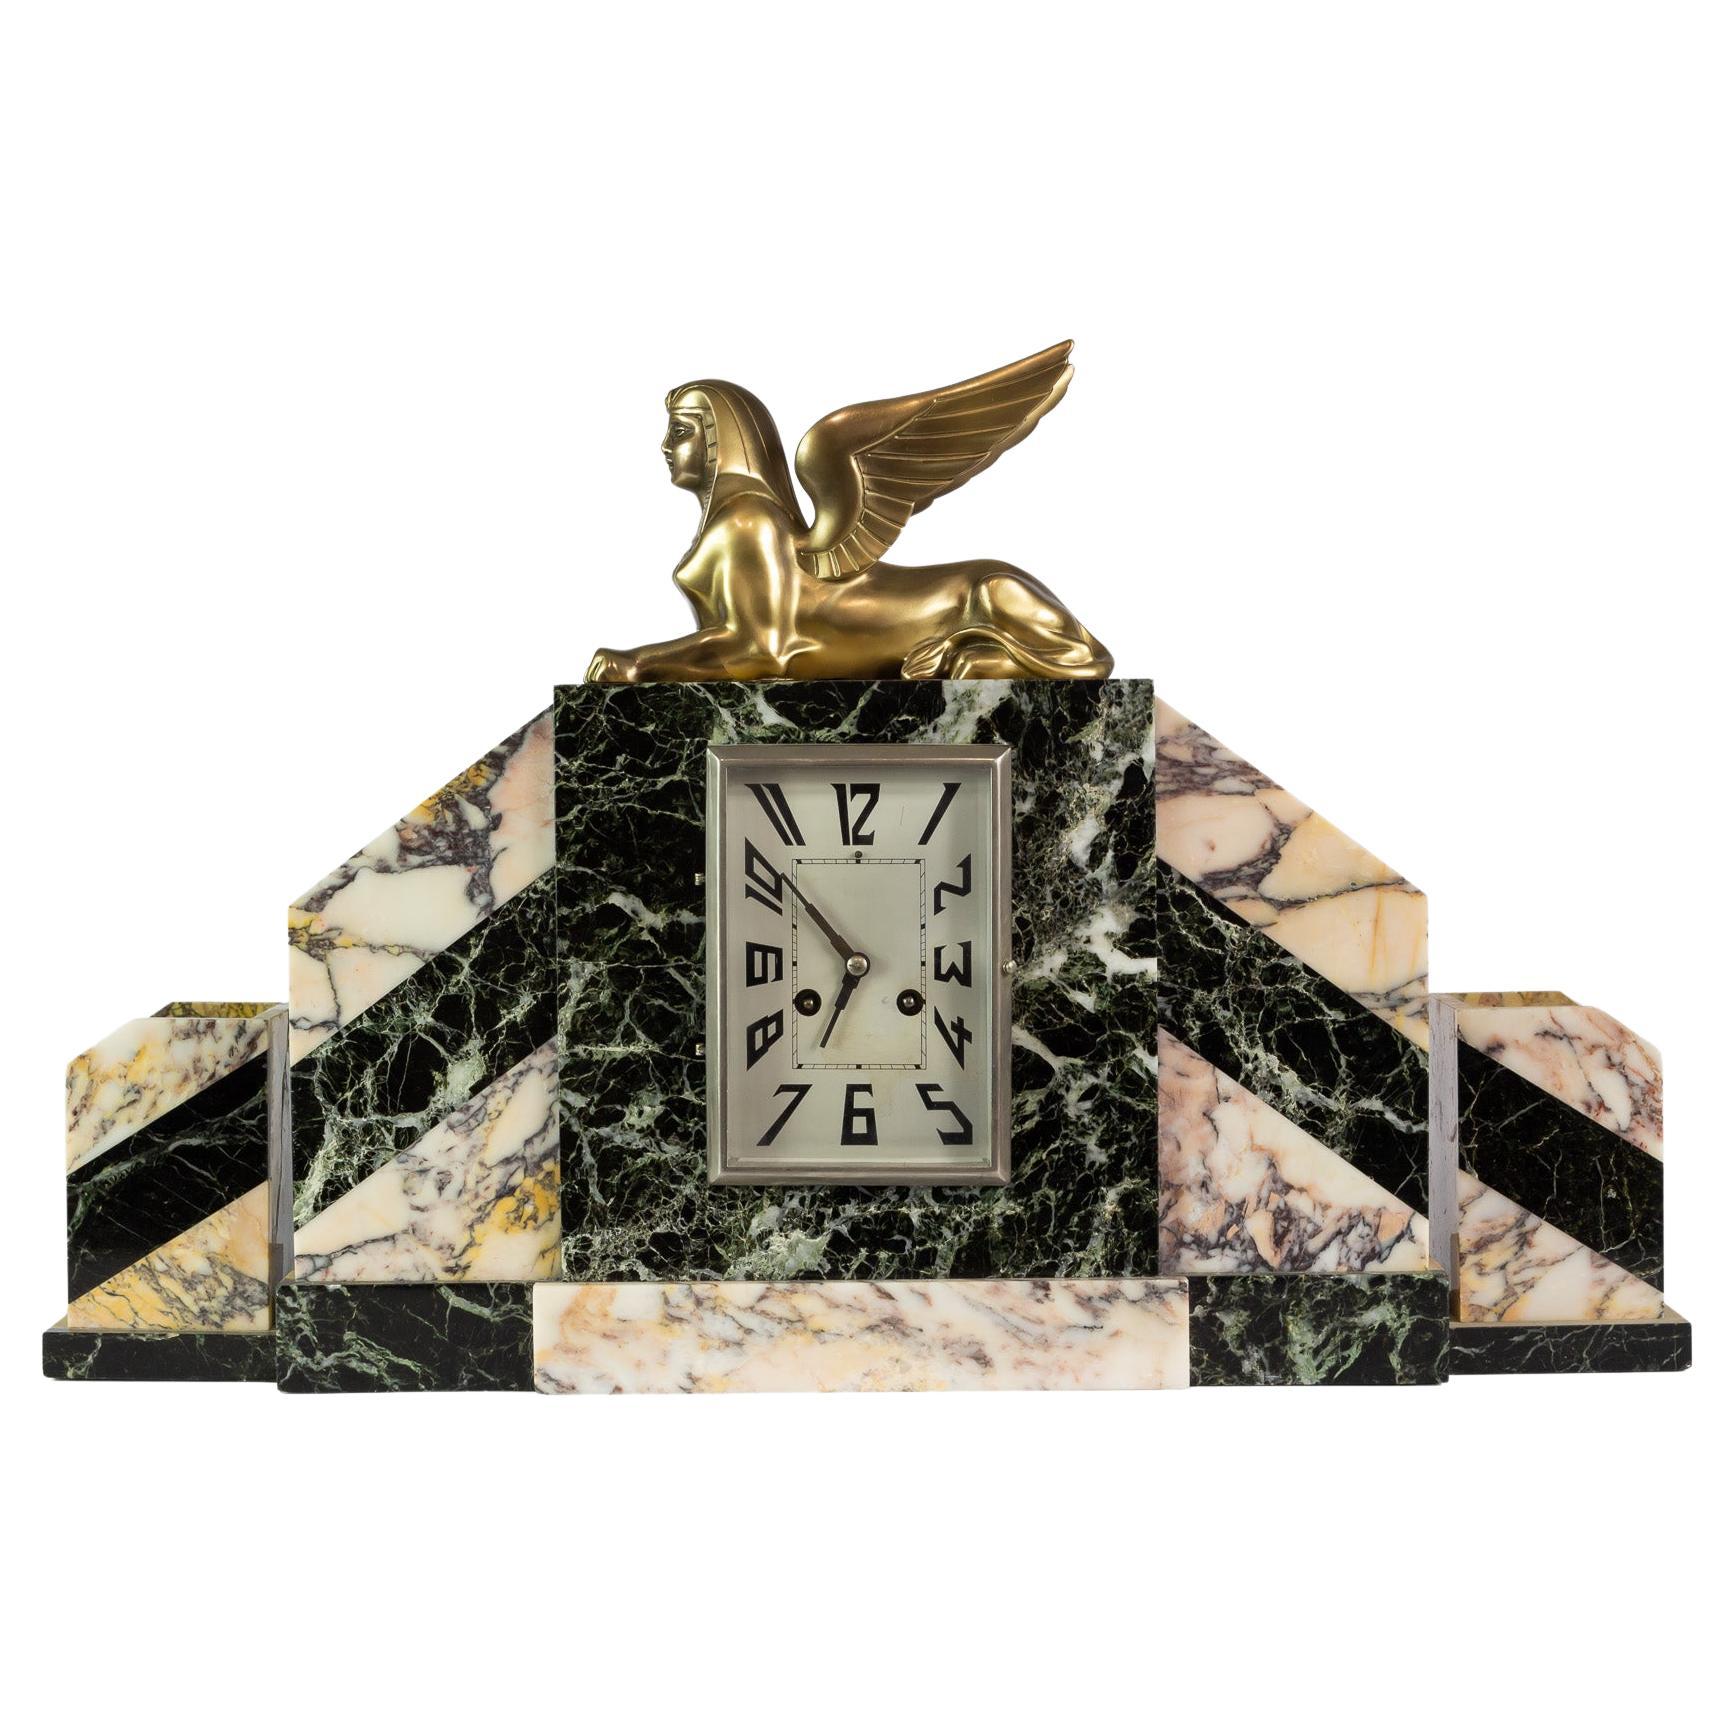 Art Deco Mantel Clock Set with Sphinx Bronze Sculpture